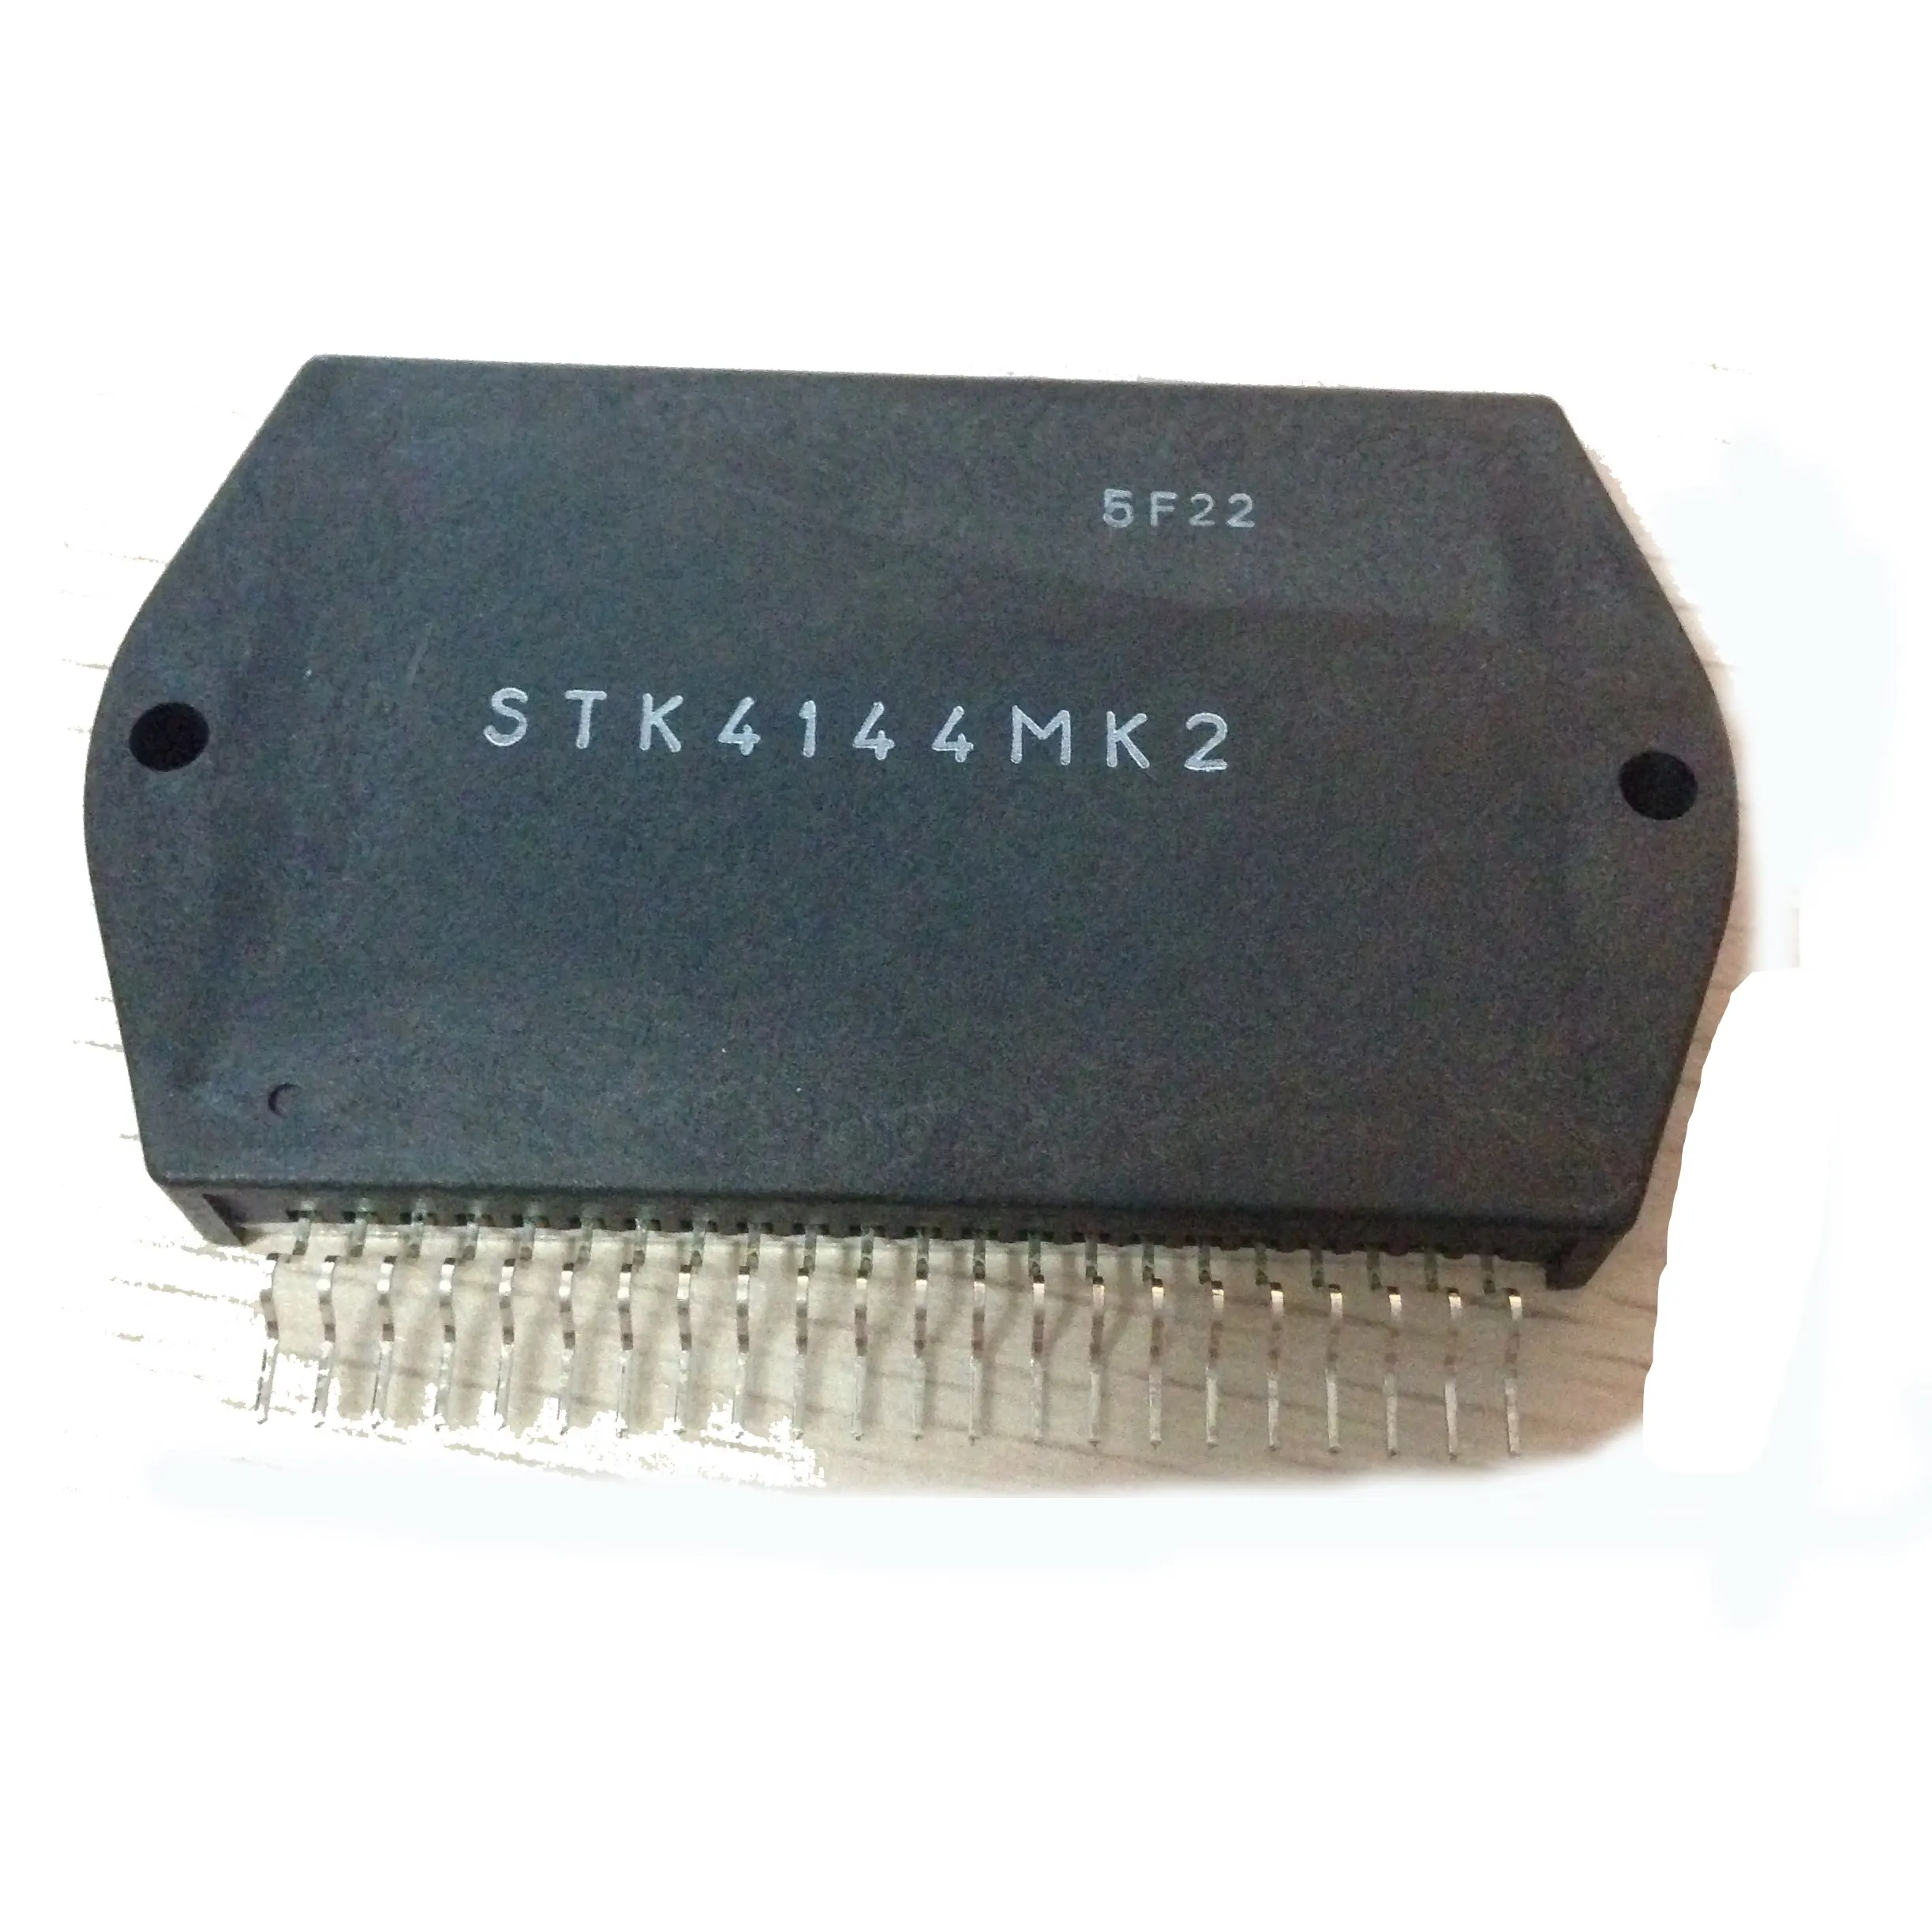 Stk4144 stk4144mk2 mới ban đầu Stereo khuếch đại công suất khuếch đại âm thanh mô-đun IC hyb22